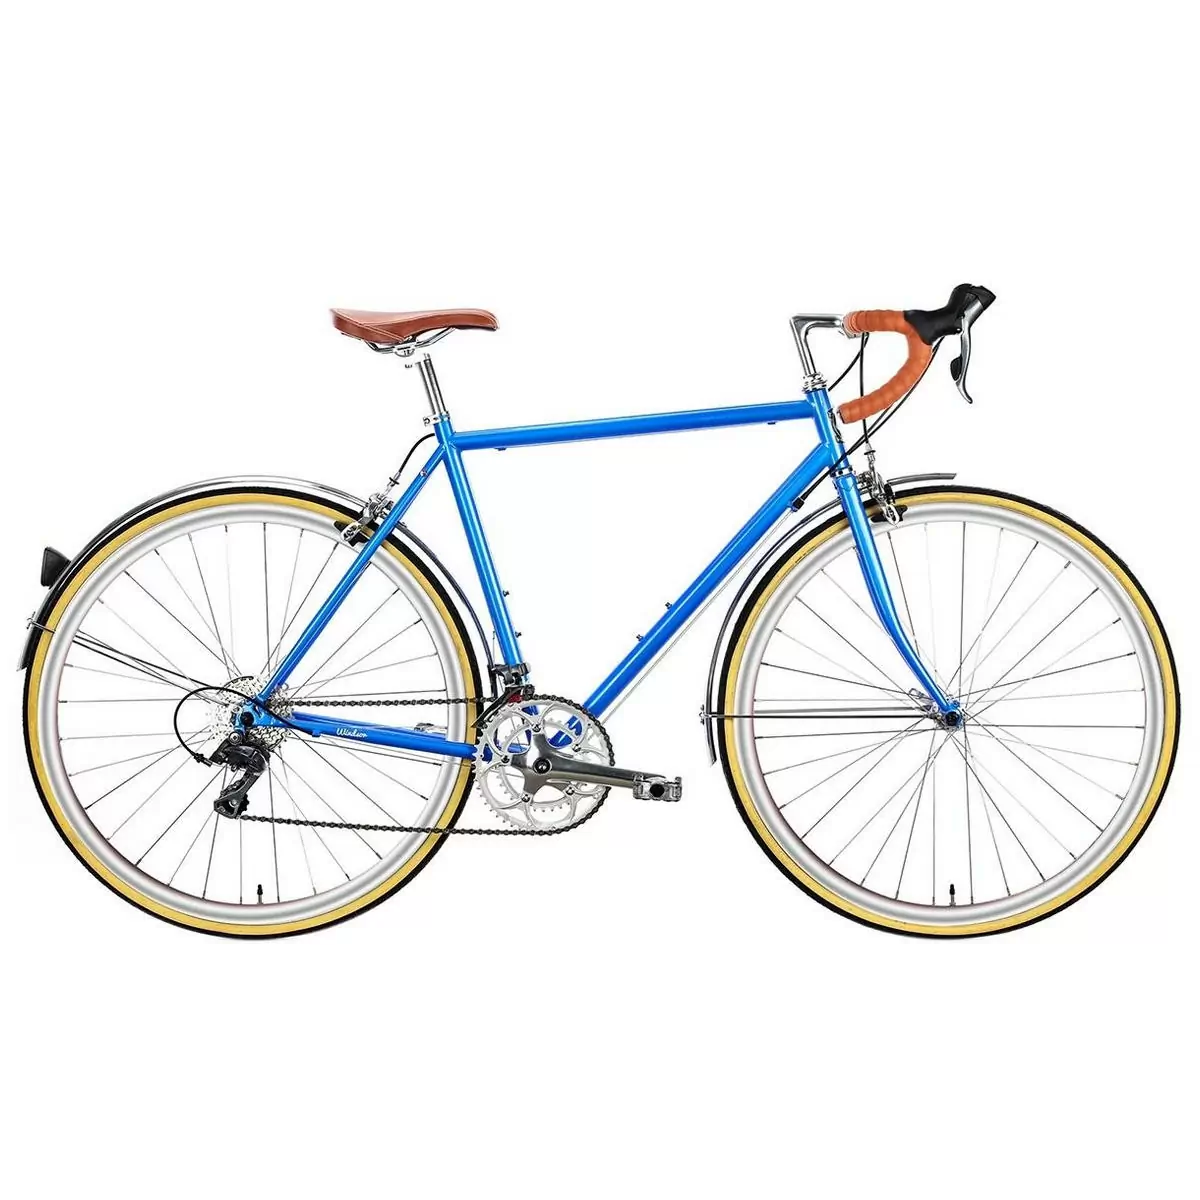 Bicicletta city TROY 16v blu windsor small 49cm - image